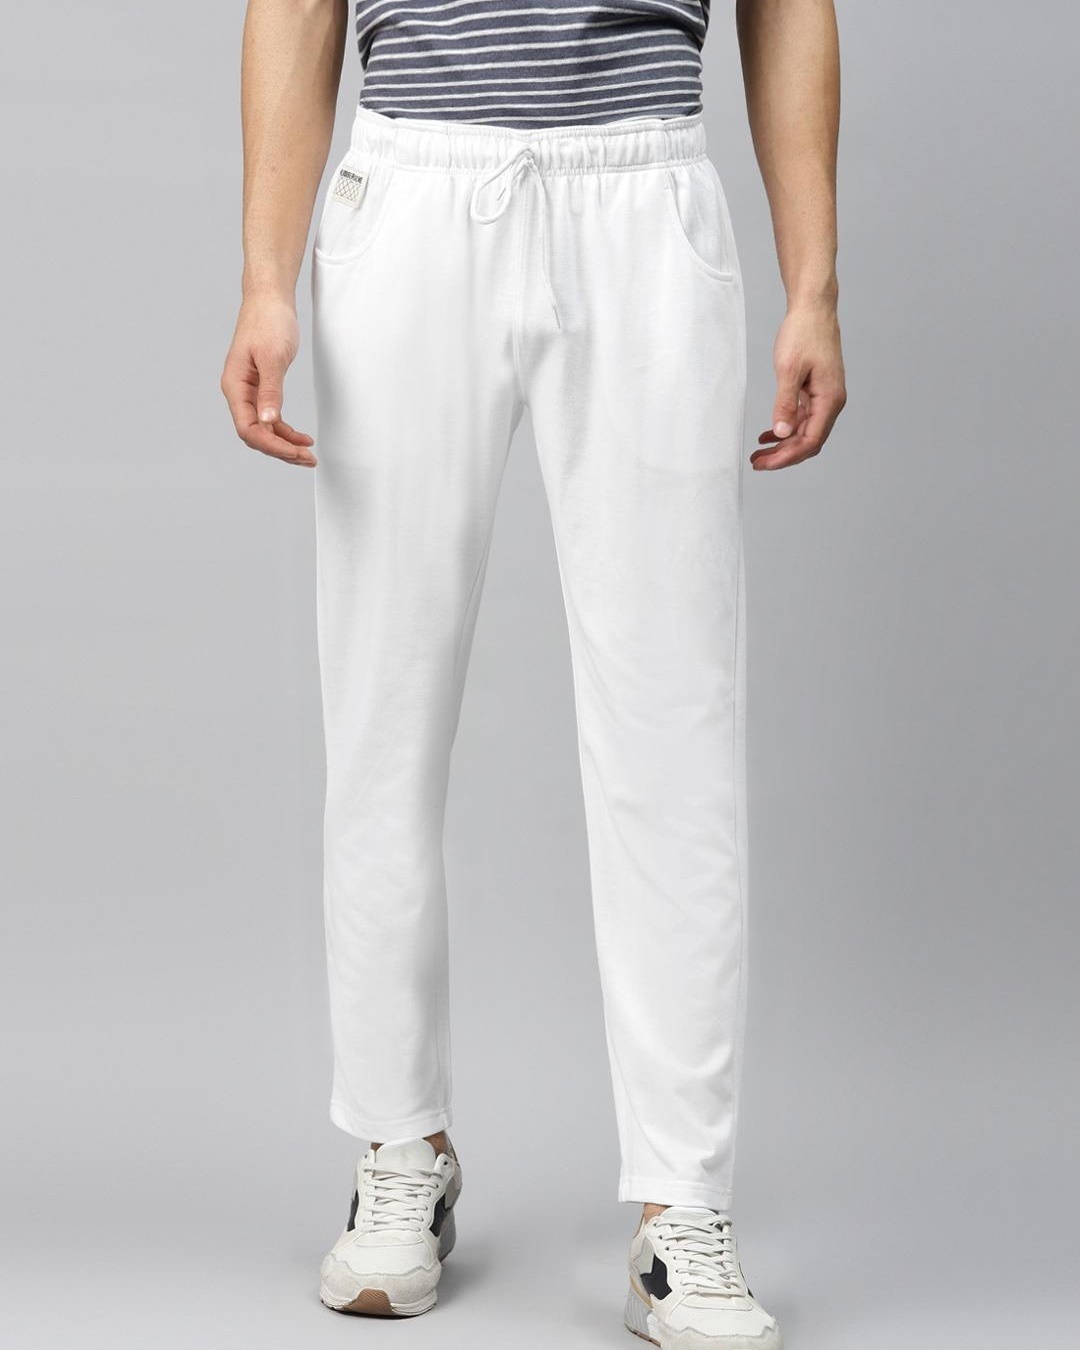 Buy Men's White Track Pants for Men White Online at Bewakoof